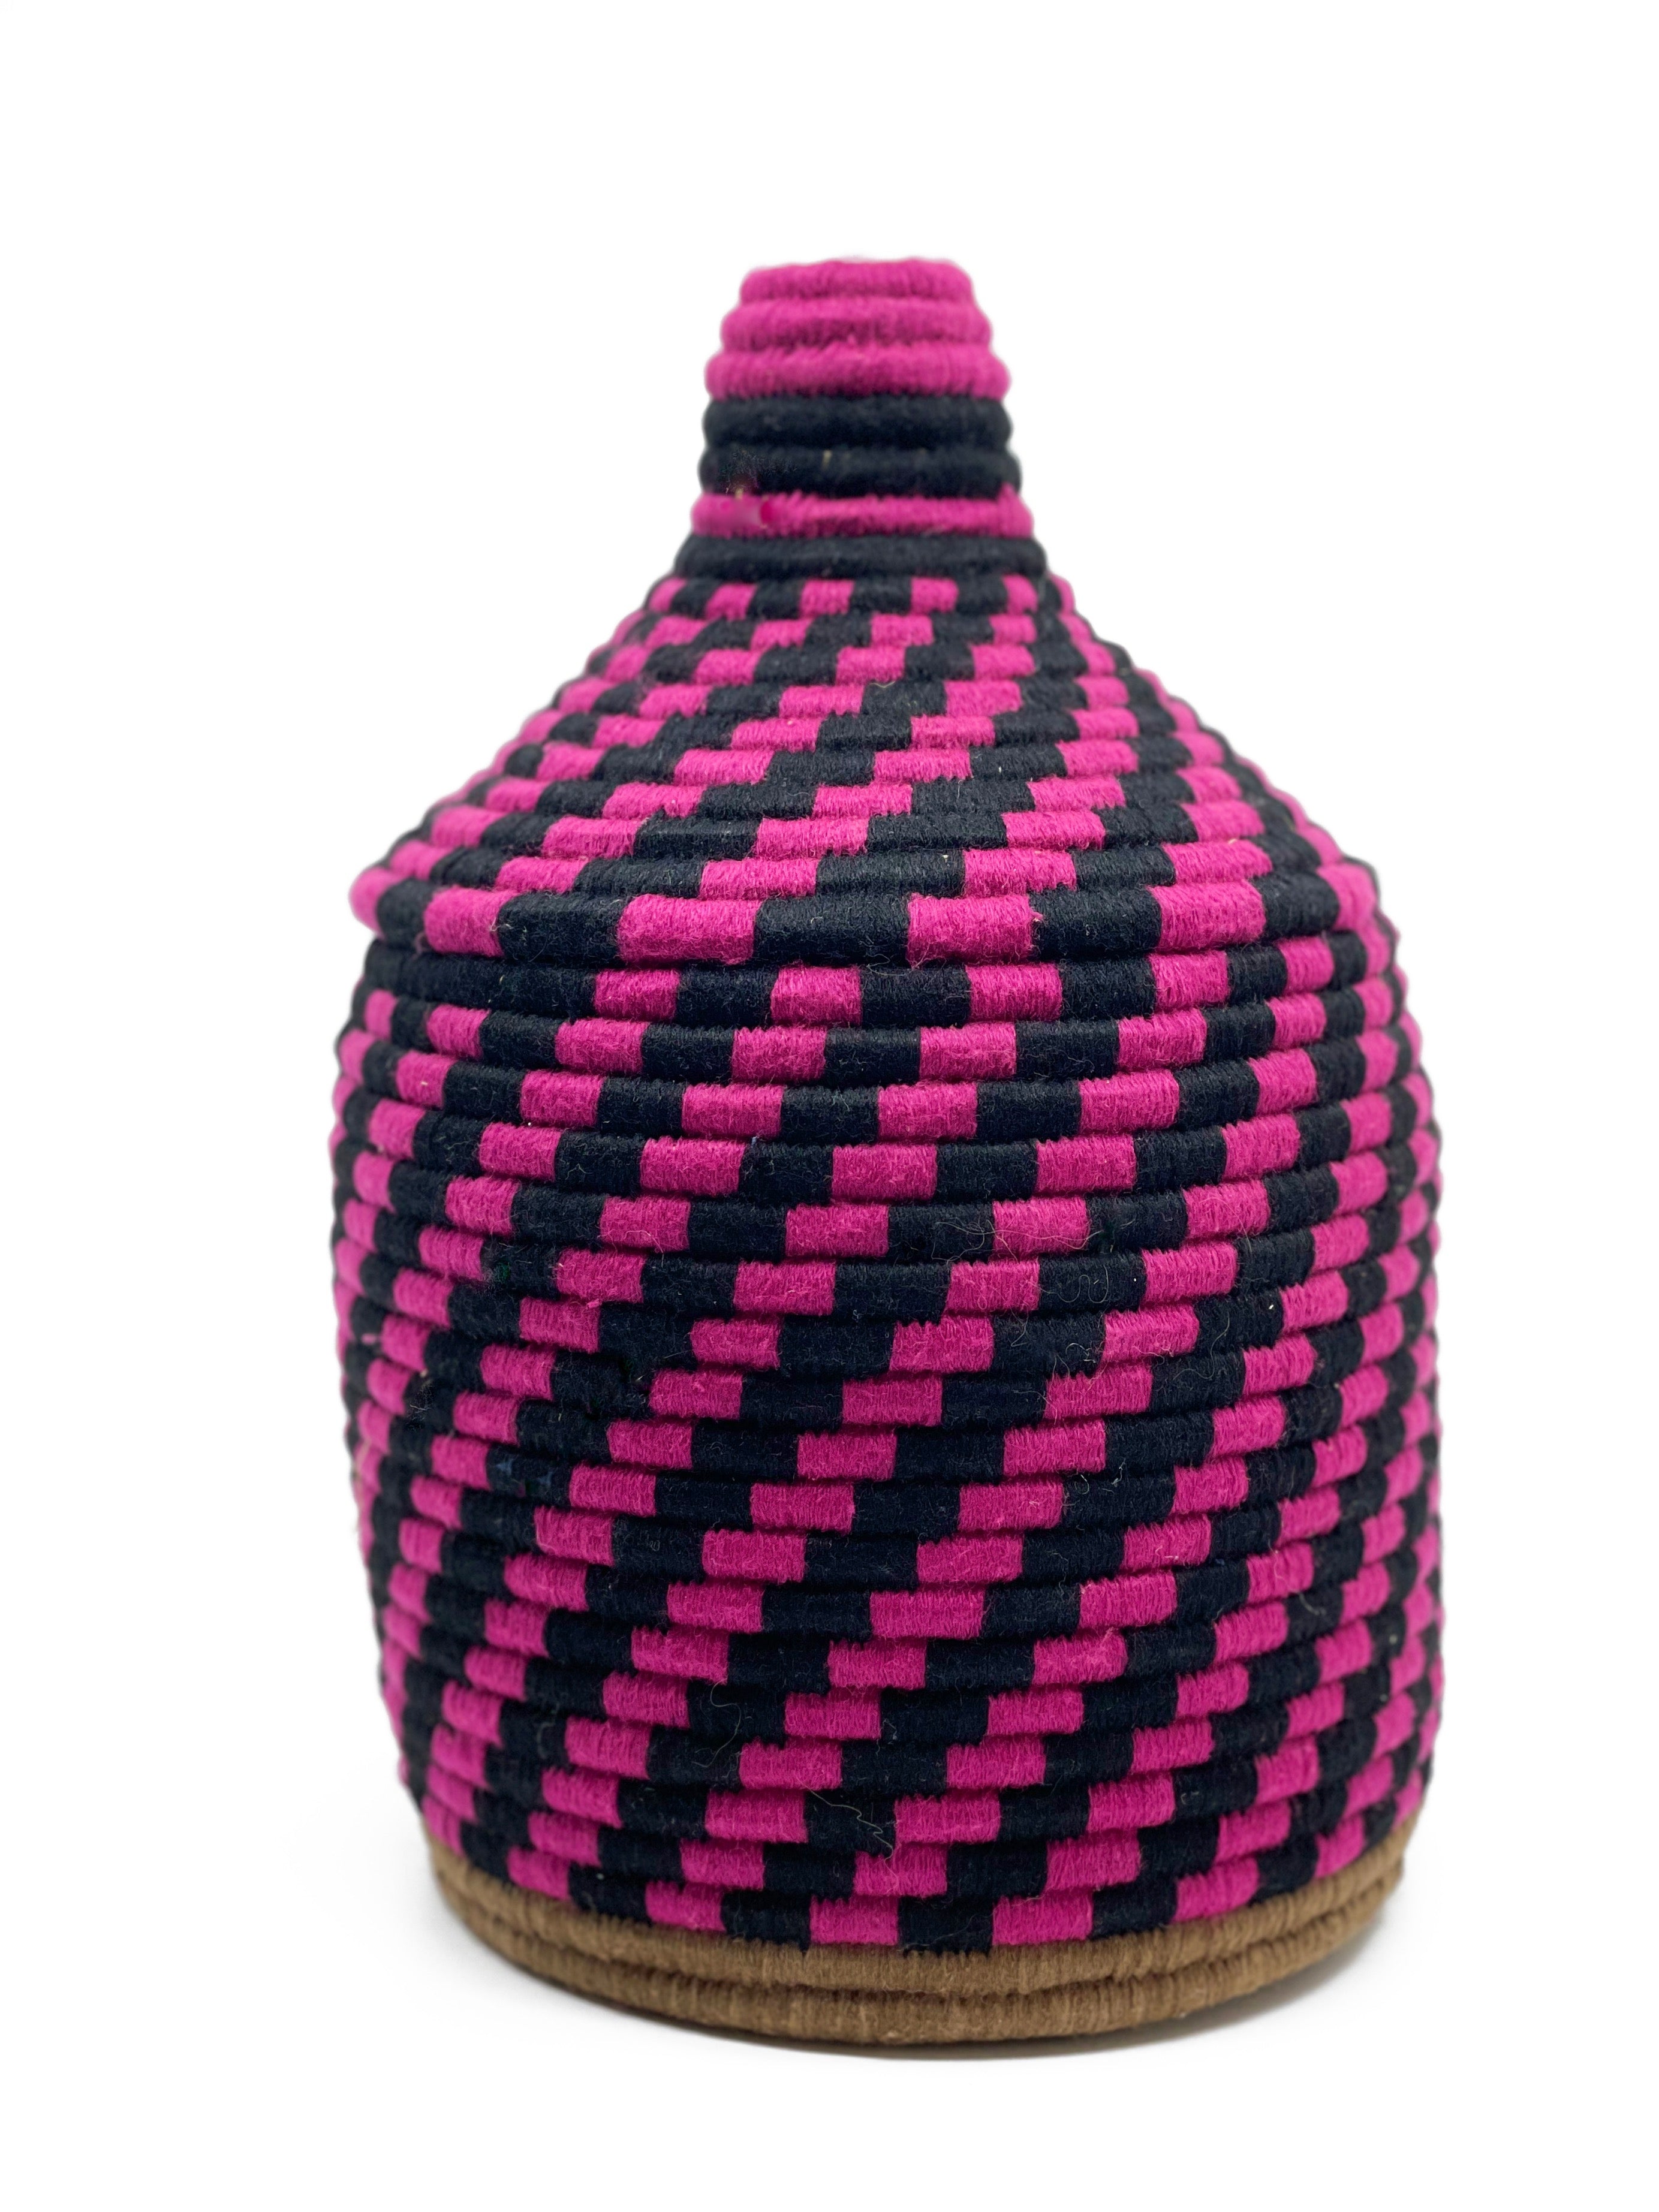 Berber basket no. 1